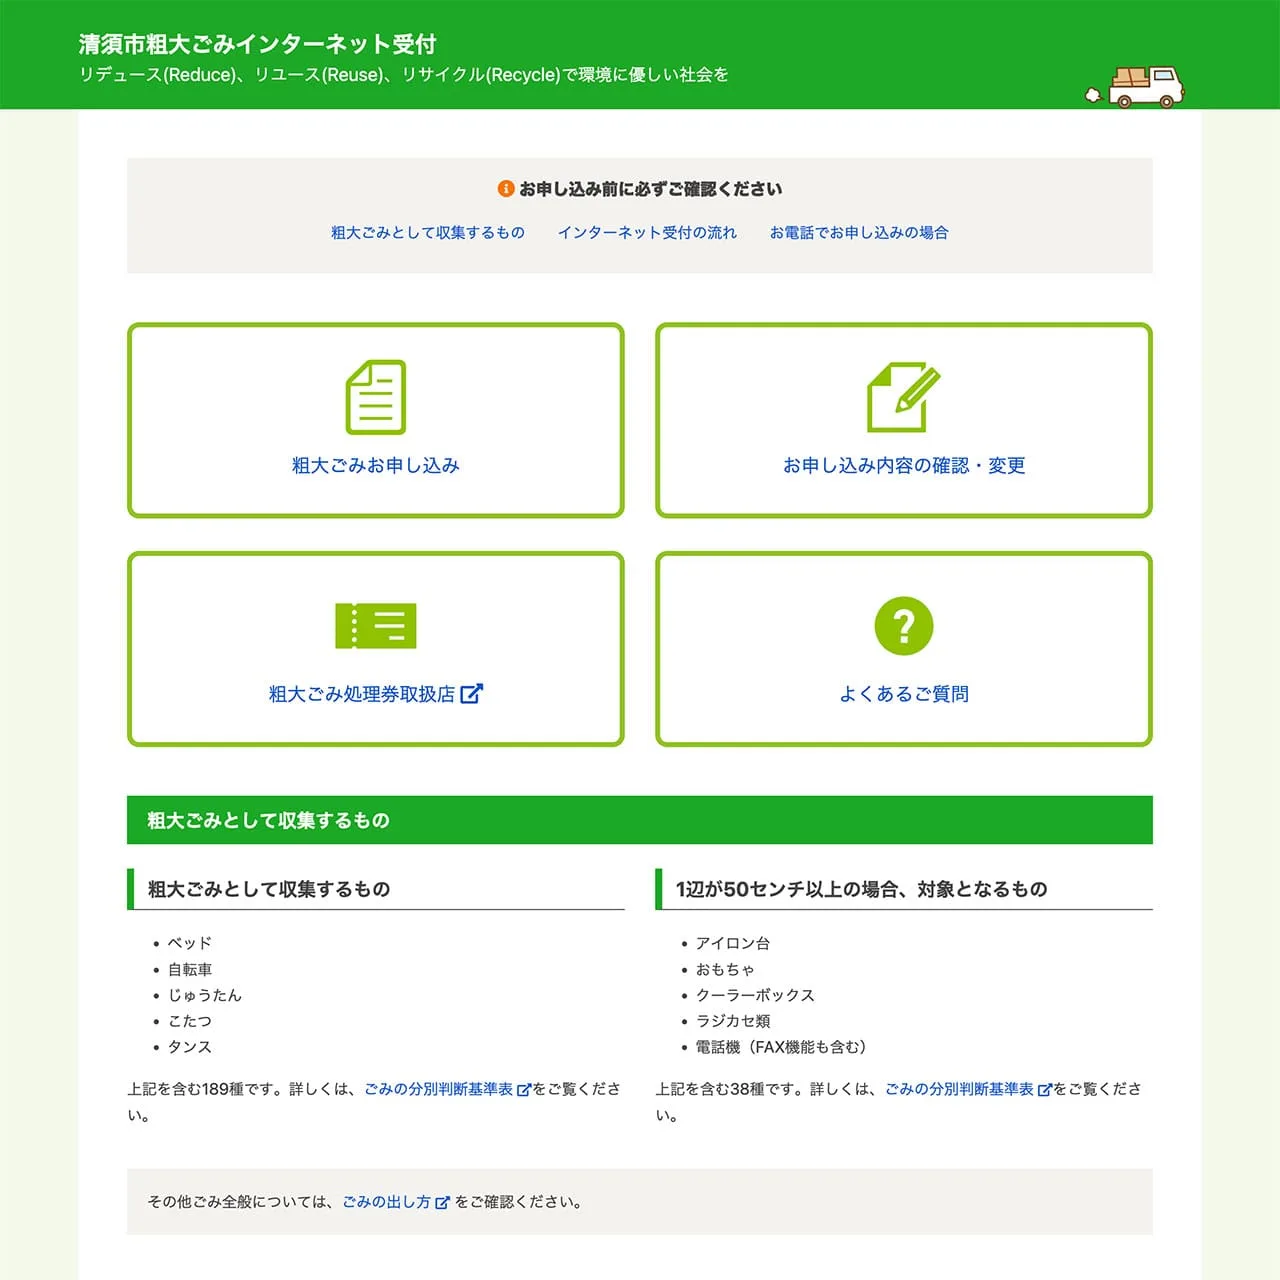 粗大ごみ収集ネット受付システム sodai.jp - 株式会社アロハワークス